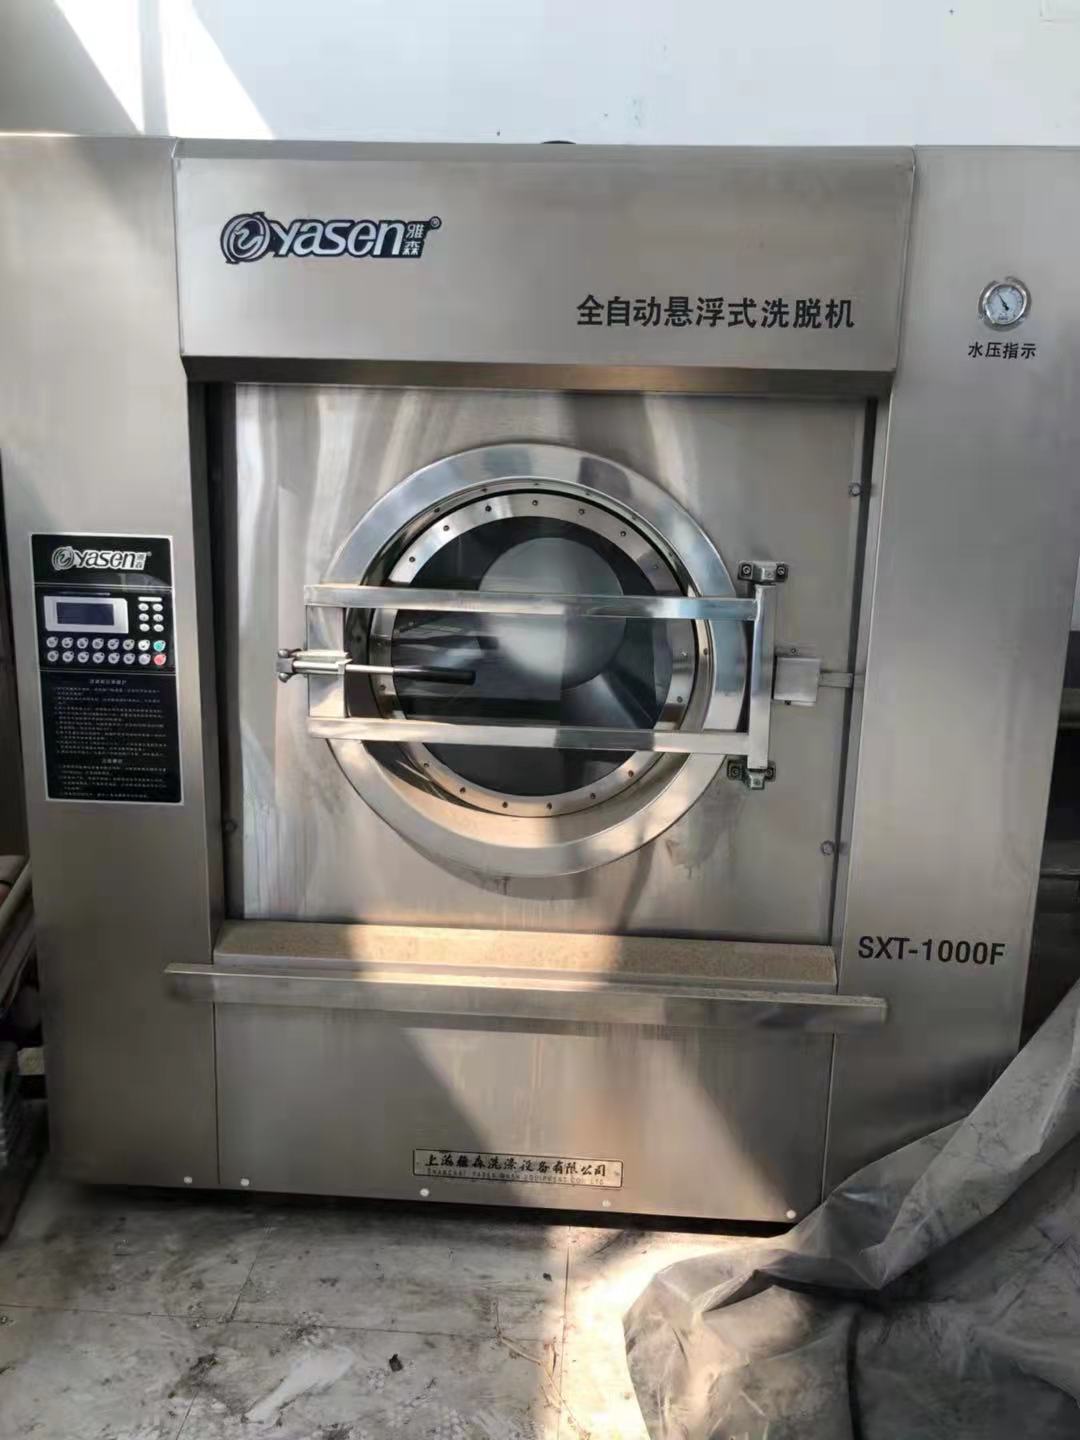 转让全厂全套雅森100公斤洗涤设备布草机水洗机烘干机折叠机烫平机3